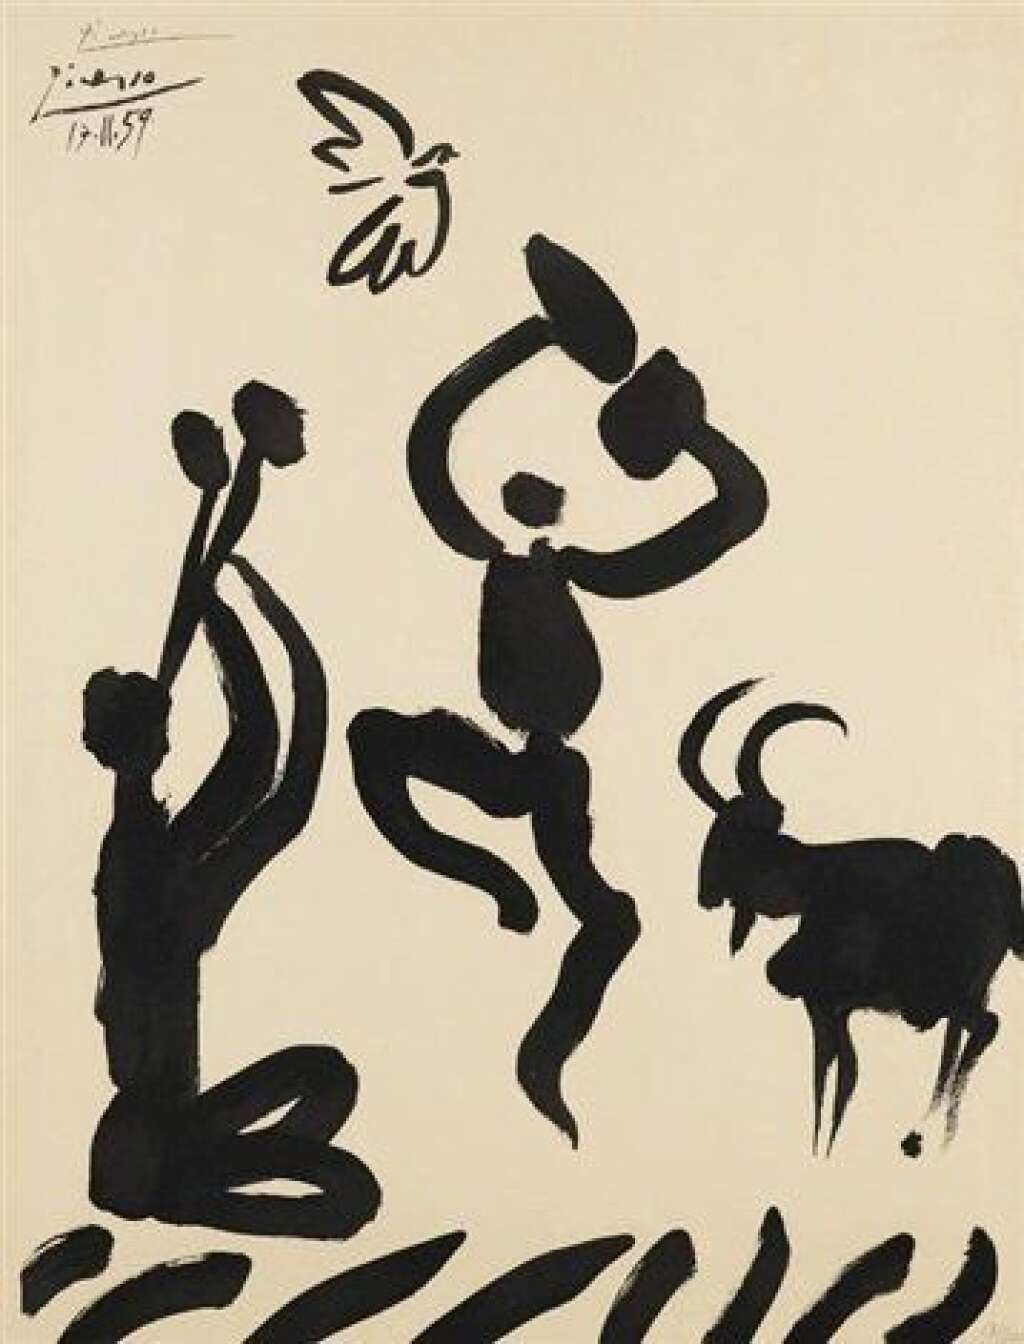 Picasso et la danse - <p><em>Du 19 juin au 16 septembre 2018 à la Bibliothèque National de France à Paris. </em></p>  <p>La Bibliothèque nationale de France et l’Opéra national de Paris explorent les différentes facettes du rapport de Picasso à la danse à travers une série d’œuvres et de documents rarement exposés en France.</p>  <p>Bien avant son mariage avec la ballerine Olga, c’est pour la danse populaire que l’artiste avait témoigné son intérêt, croquant le cirque comme le cabaret à travers de multiples dessins. Si son activité – aux côtés de Cocteau, Stravinsky ou Massine – de dessinateur de costumes et décors pour les Ballets russes dans les années 1910-1920 est bien connue, se rappelle-t-on qu’il a collaboré avec le chorégraphe Serge Lifar pour la reprise d’Icare en 1962 à l’Opéra de Paris?</p>  <p>L’exposition donnera aussi l’occasion de découvrir quelques aspects de la danse dans l’œuvre de Picasso, des bacchantes et autres faunes dansant furieusement dans les estampes d’inspiration mythologique des années 1940-1950, aux danses érotisées de la fin des années 1960.</p>